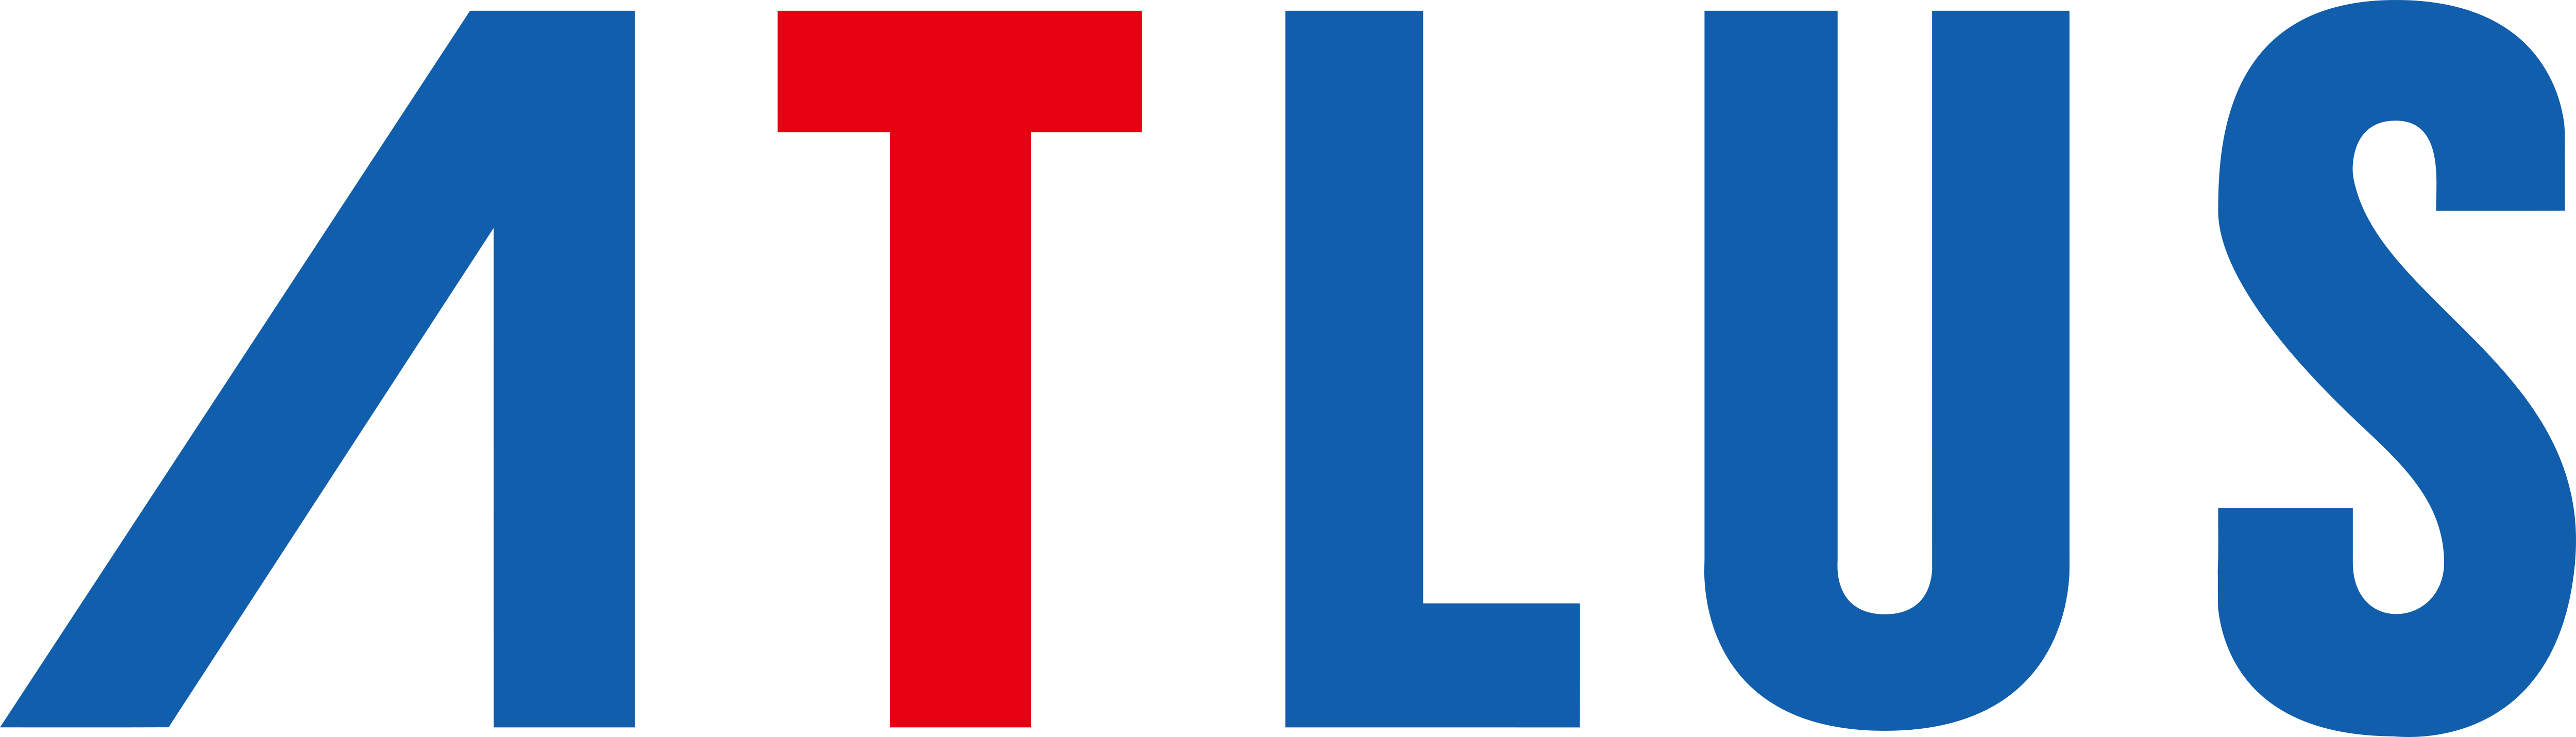 Atlus Logo - Atlus – Logos Download